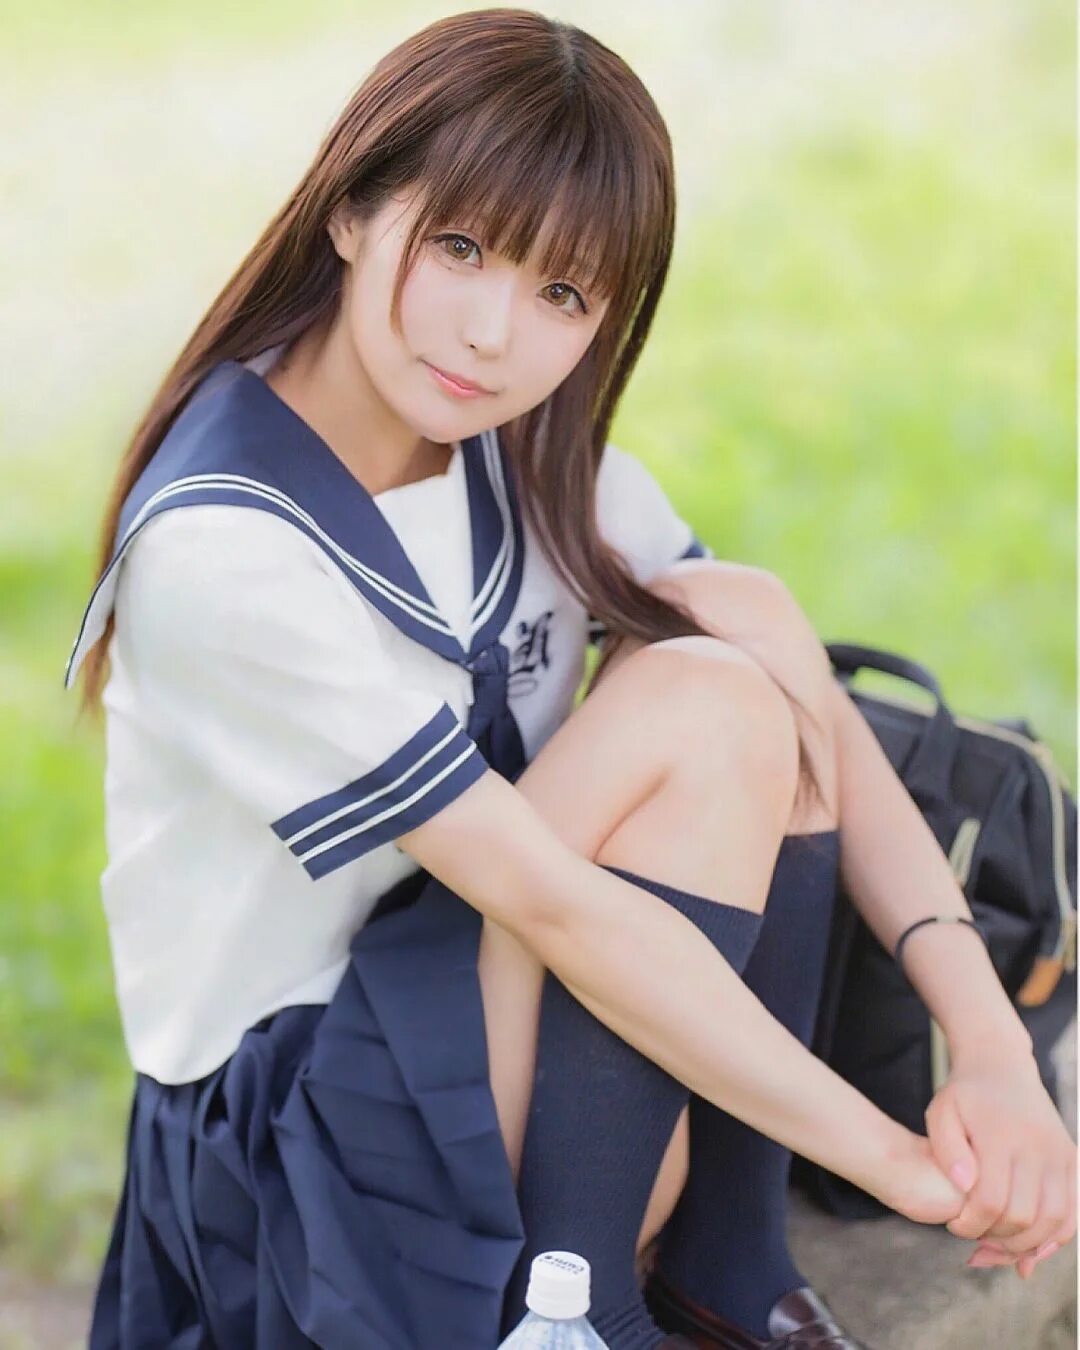 Японские девушки на корточках. Japanese school 18